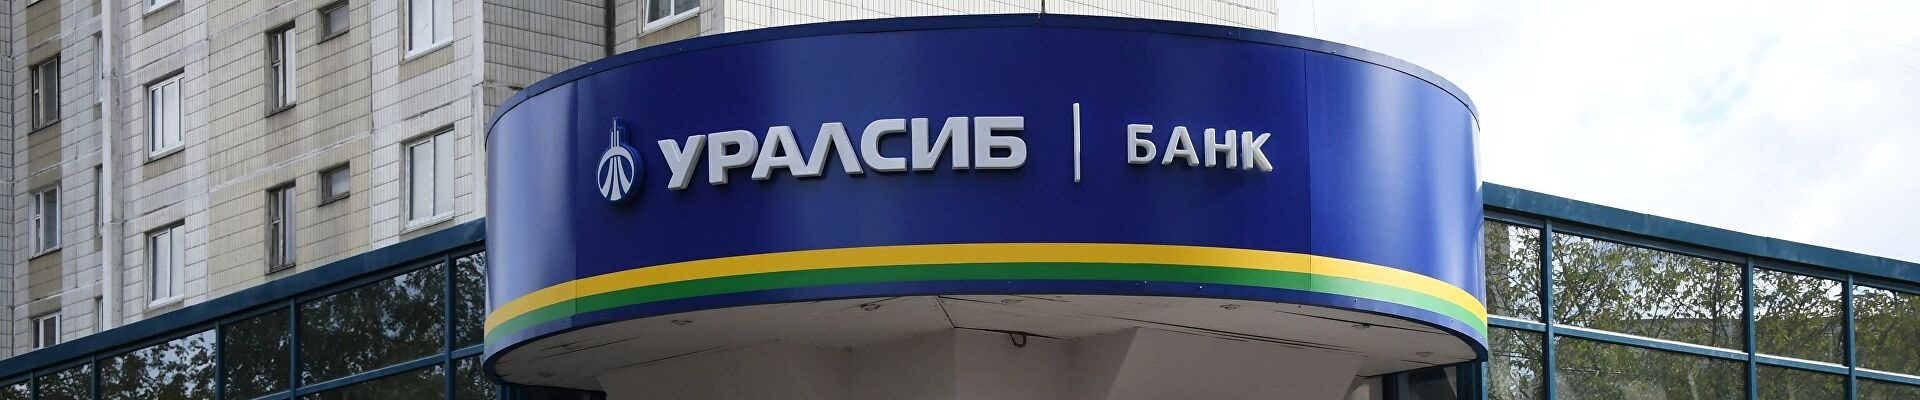 Банк Уралсиб изменяет условия кредитования по ипотечным займам и обновляет ассортимент кредитных продуктов